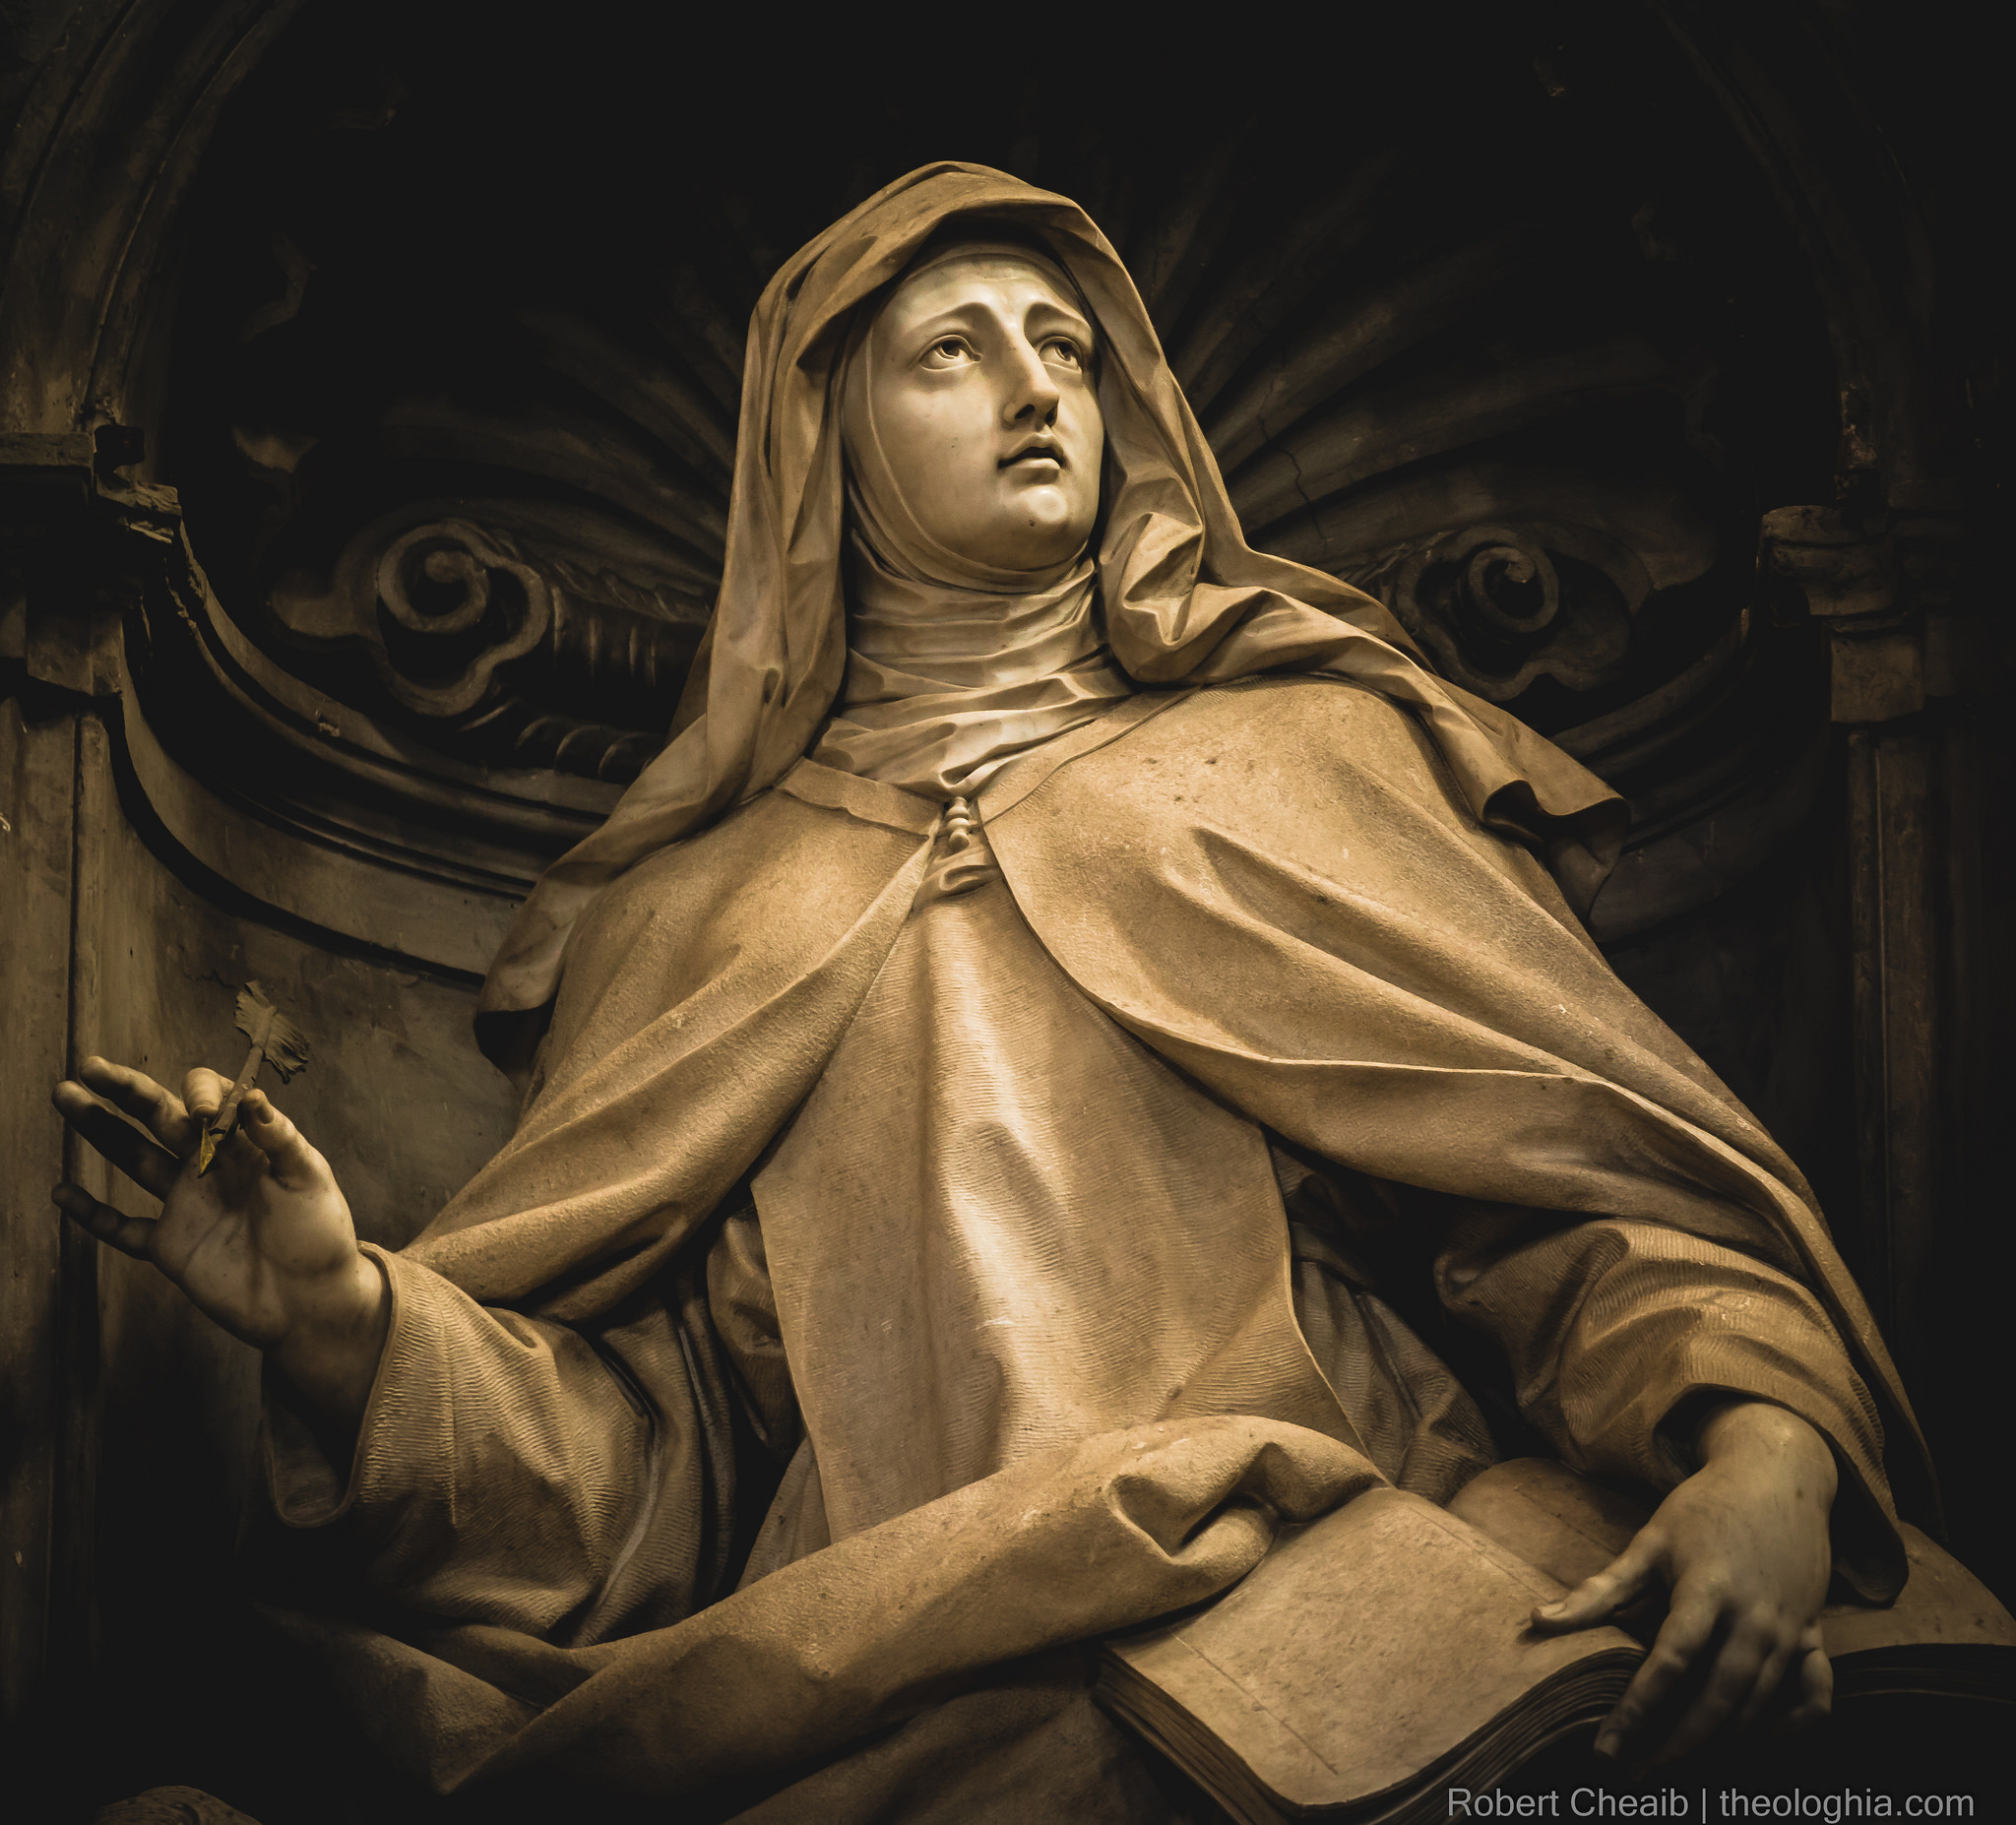 Saint Teresa de Jesus / of Avila - Statue from the Basilica of Saint Peter's in the Vatican